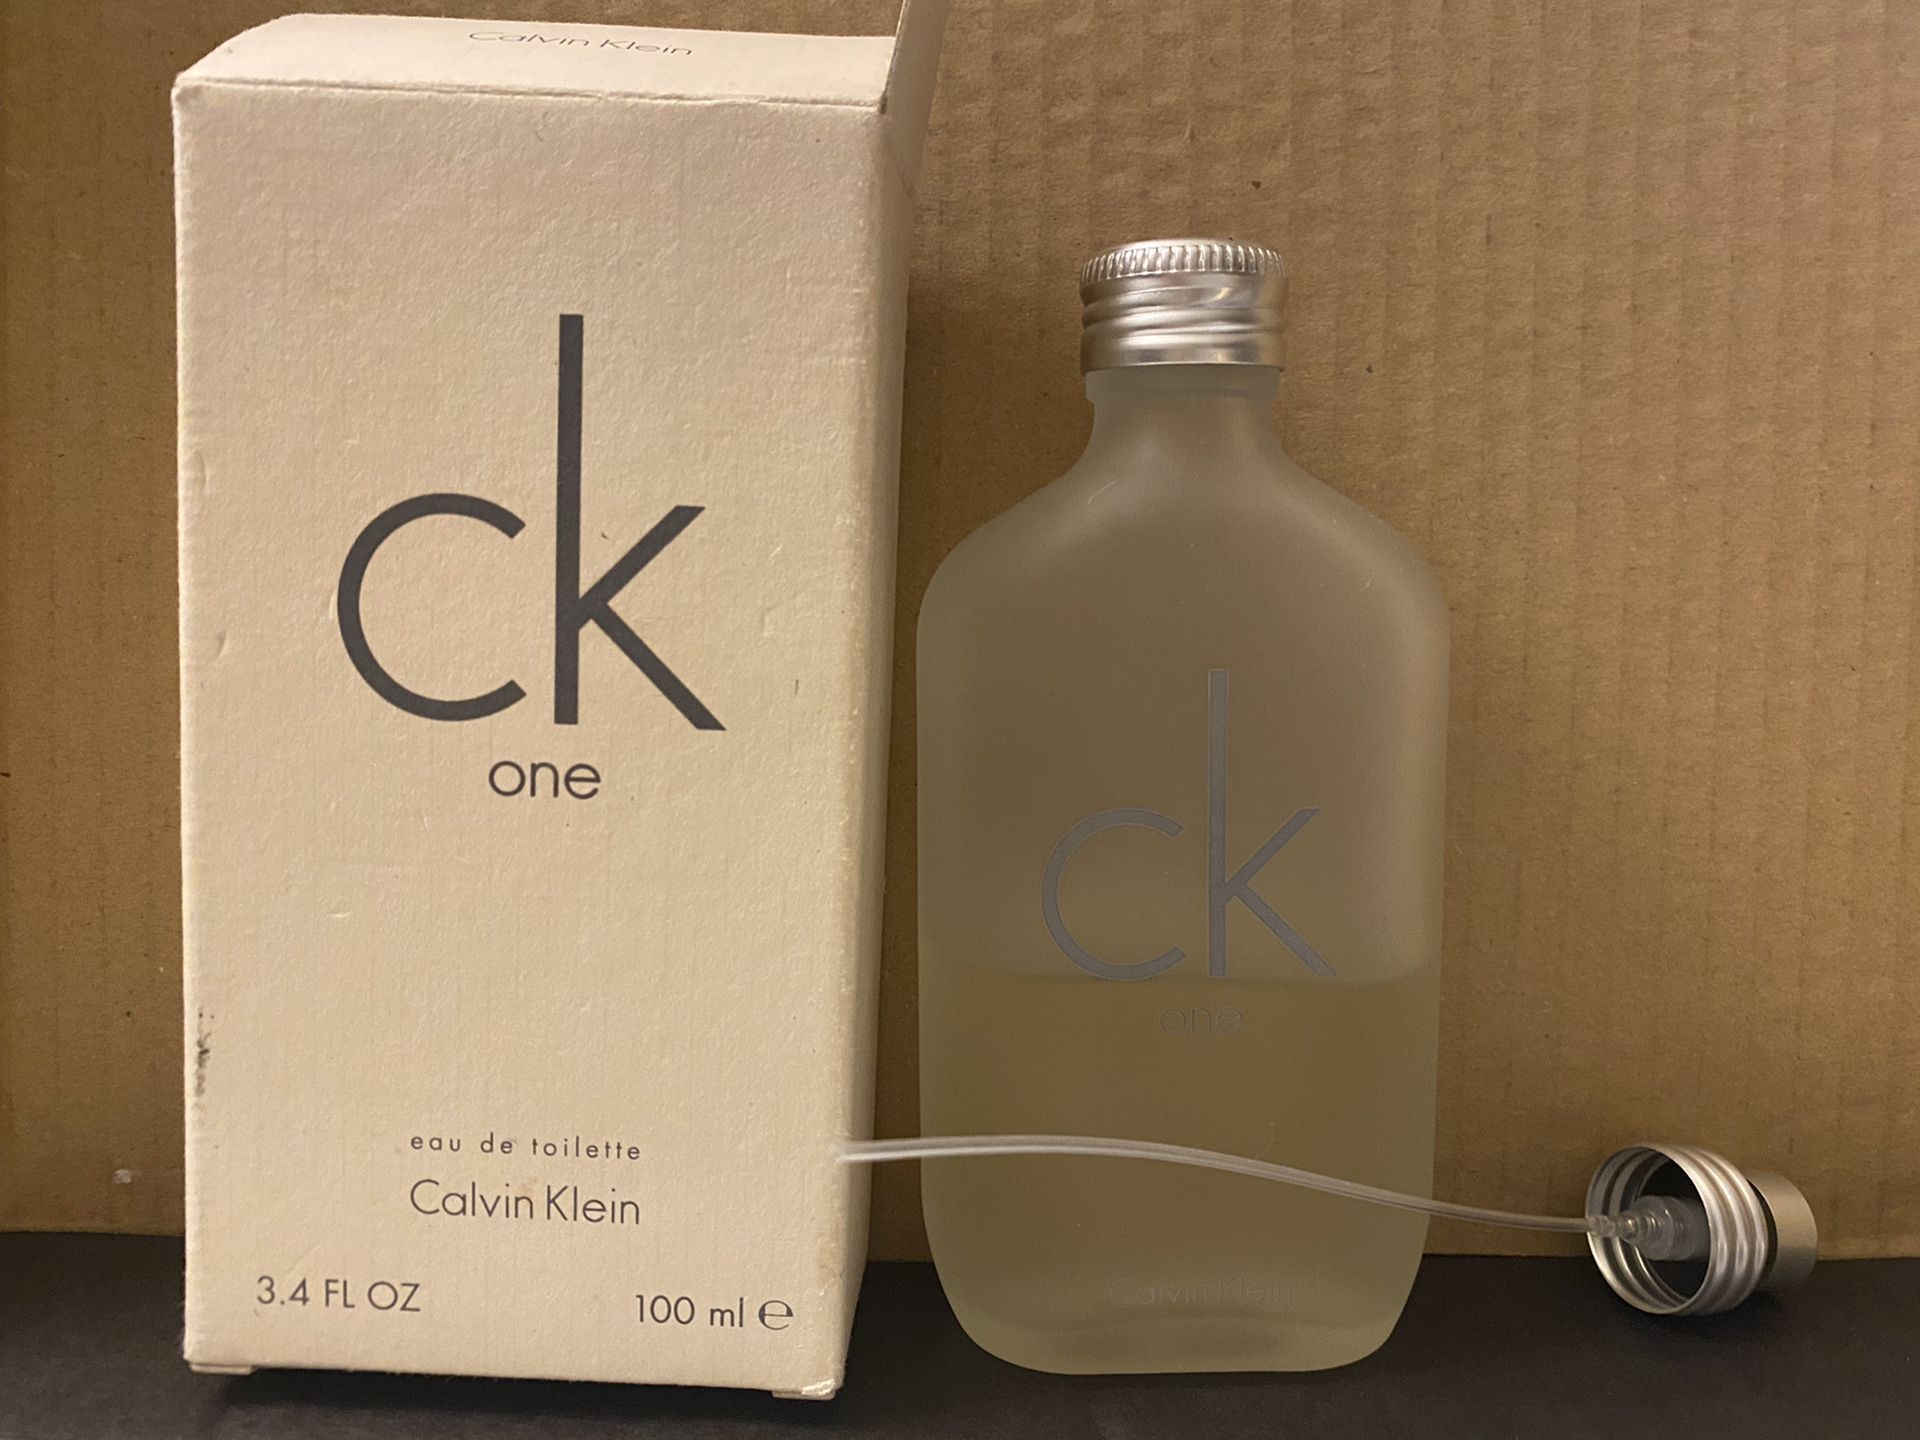 CK one 50 ml left unisex men cologne perfume